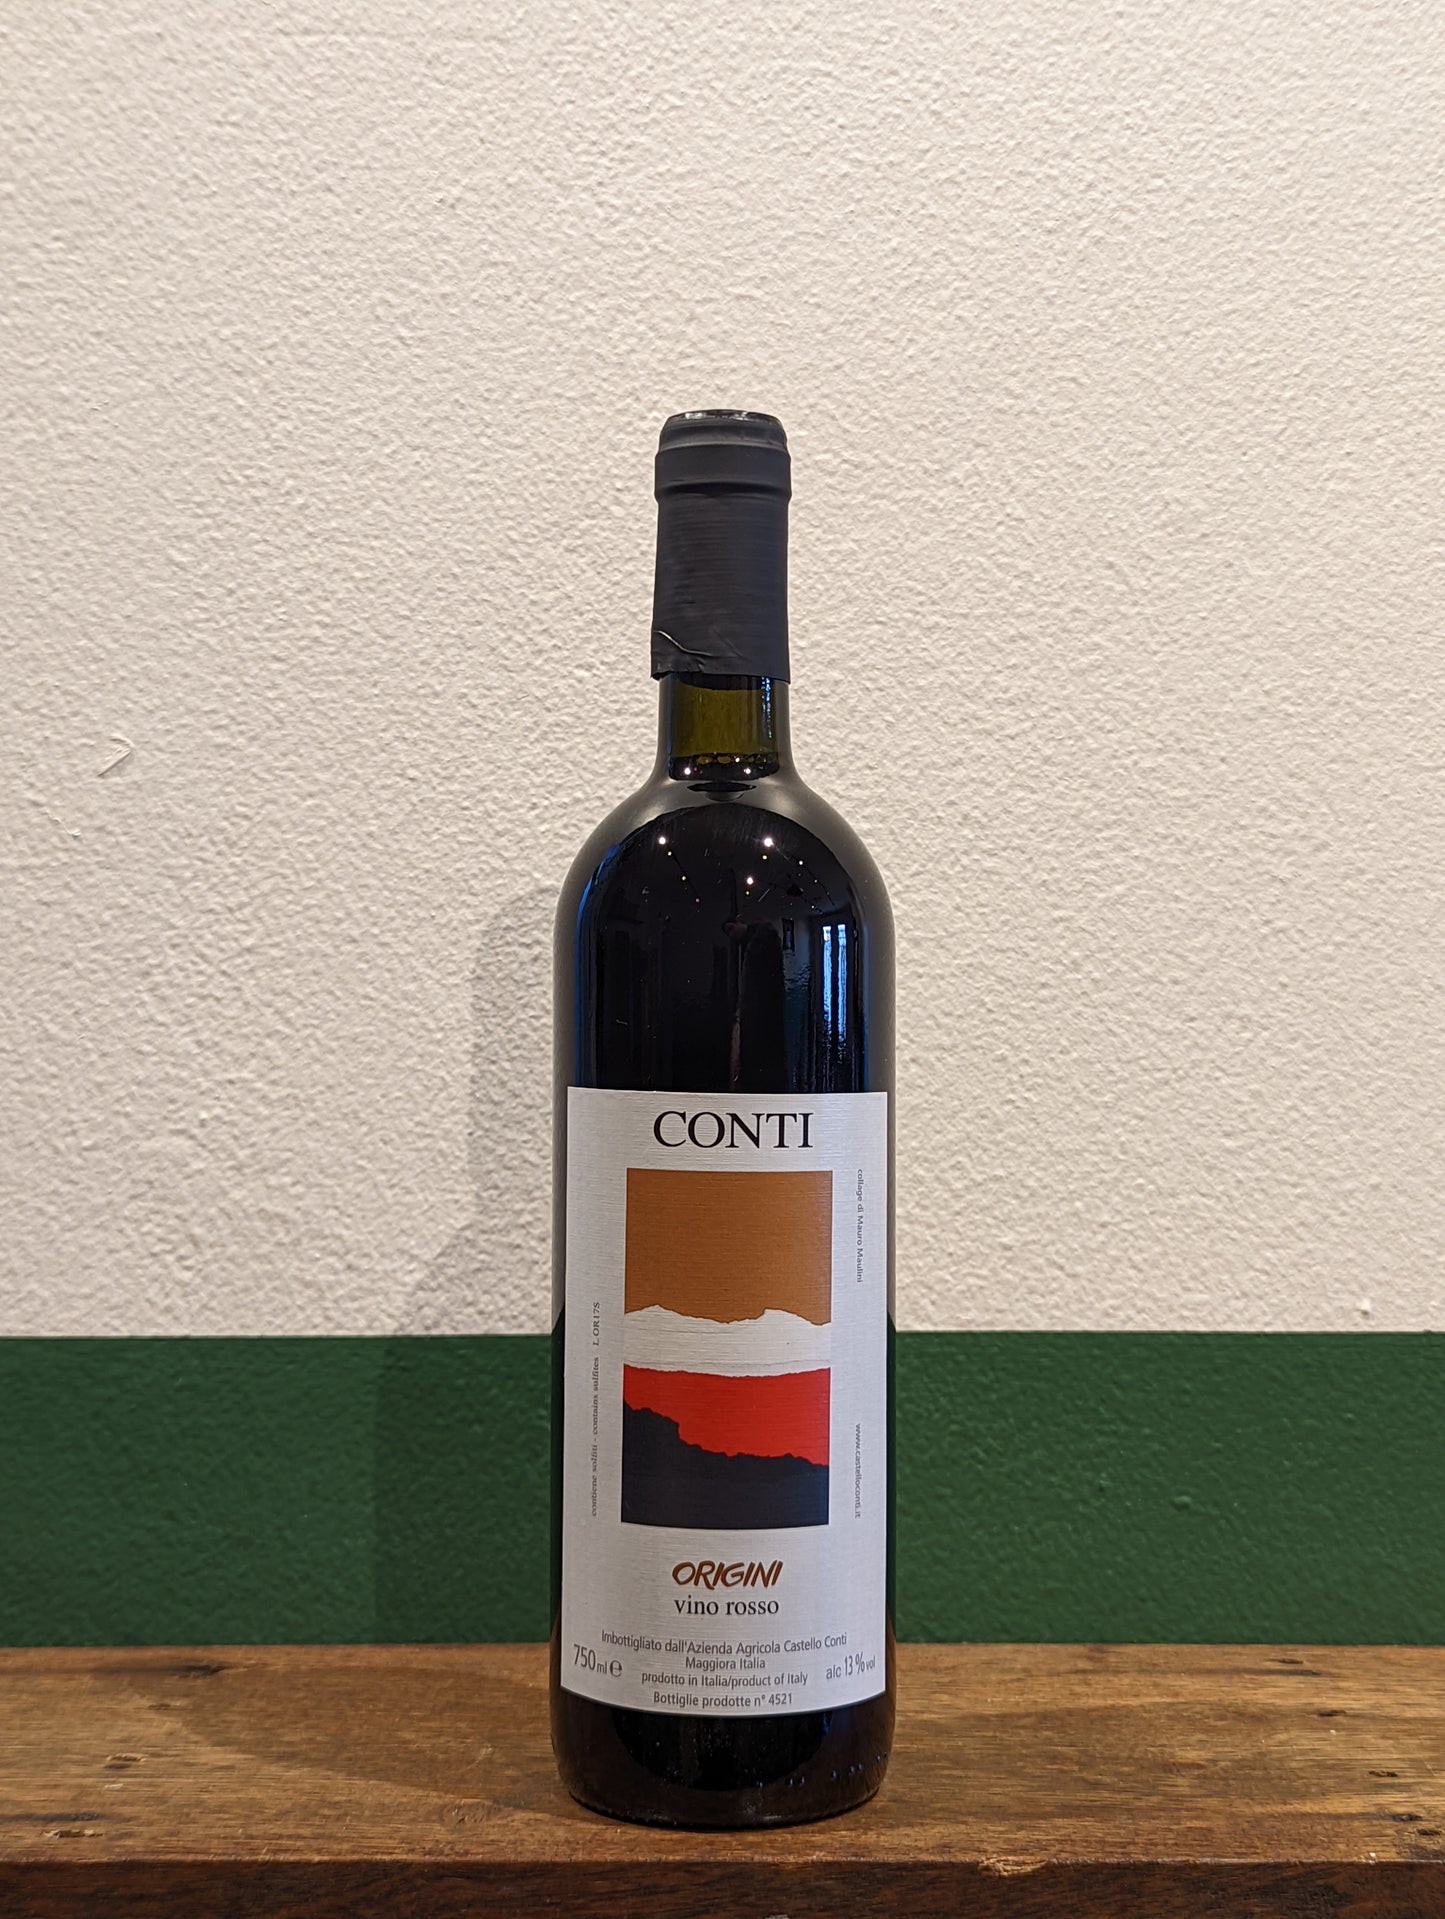 Castello Conti - Origini Vino Rosso 2017